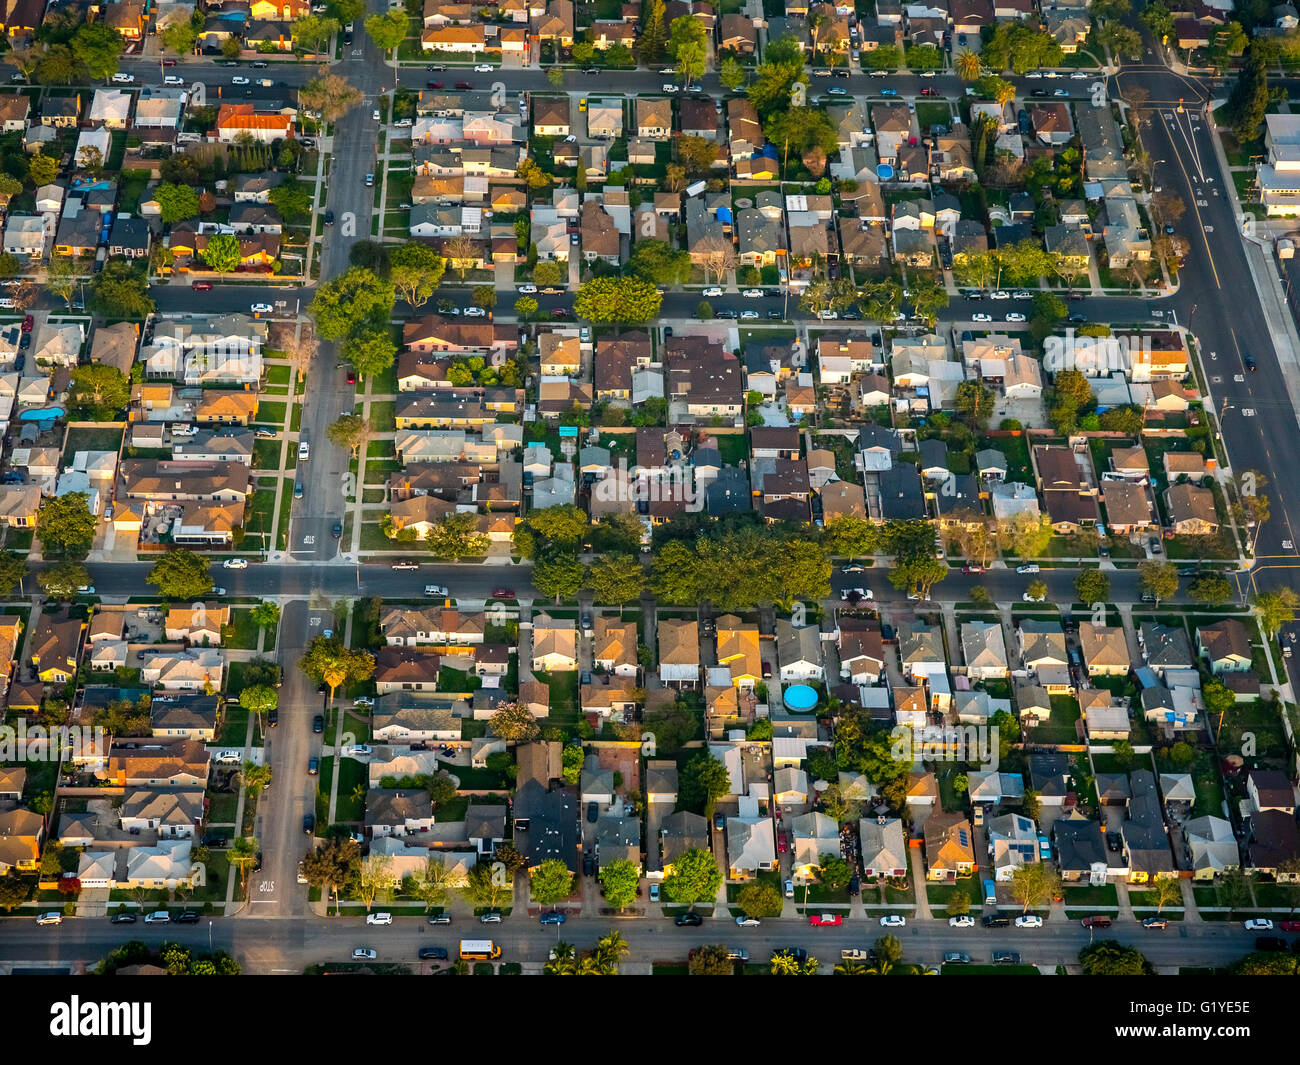 Desarrollo de Vivienda americana con viviendas unifamiliares, el comercio, el condado de Los Angeles, California, EE.UU. Foto de stock